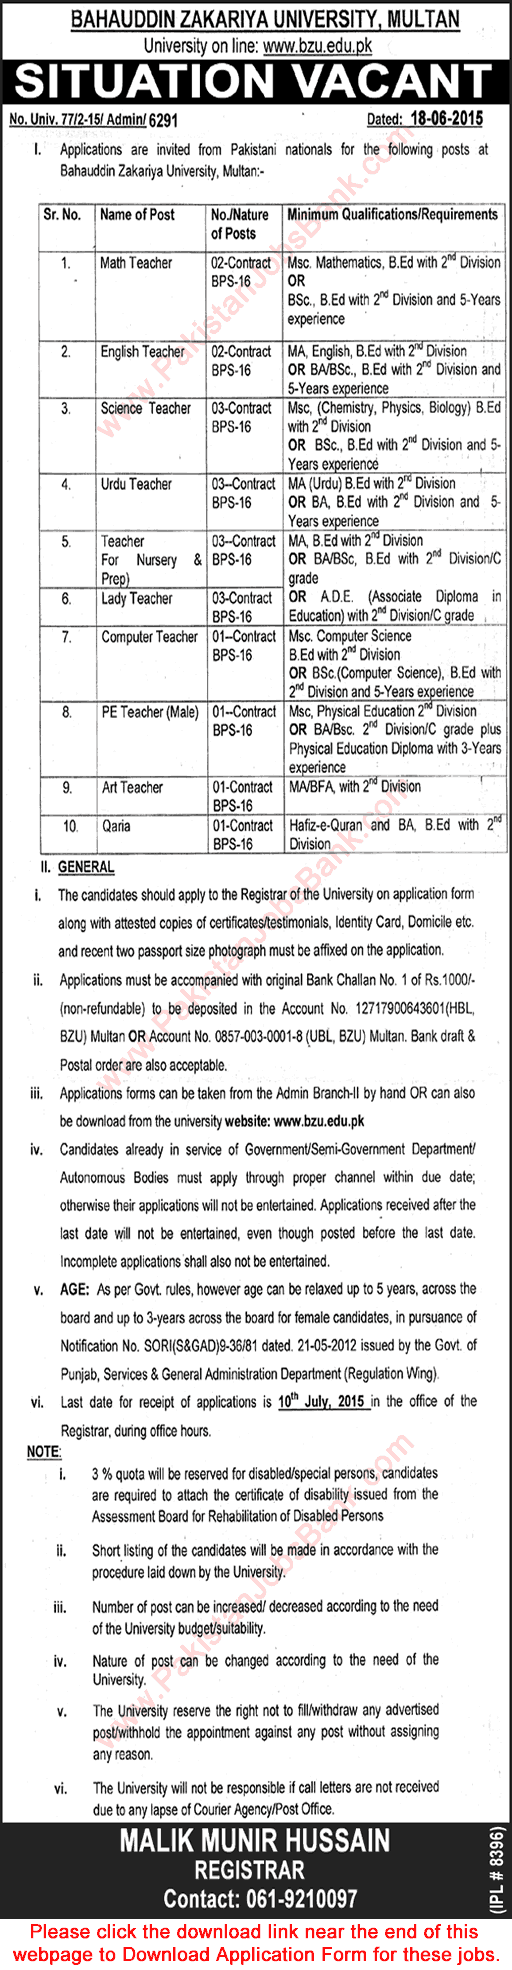 BZU Multan Jobs June 2015 Application Form Download Teaching Faculty / Teachers (BPS-16) Latest